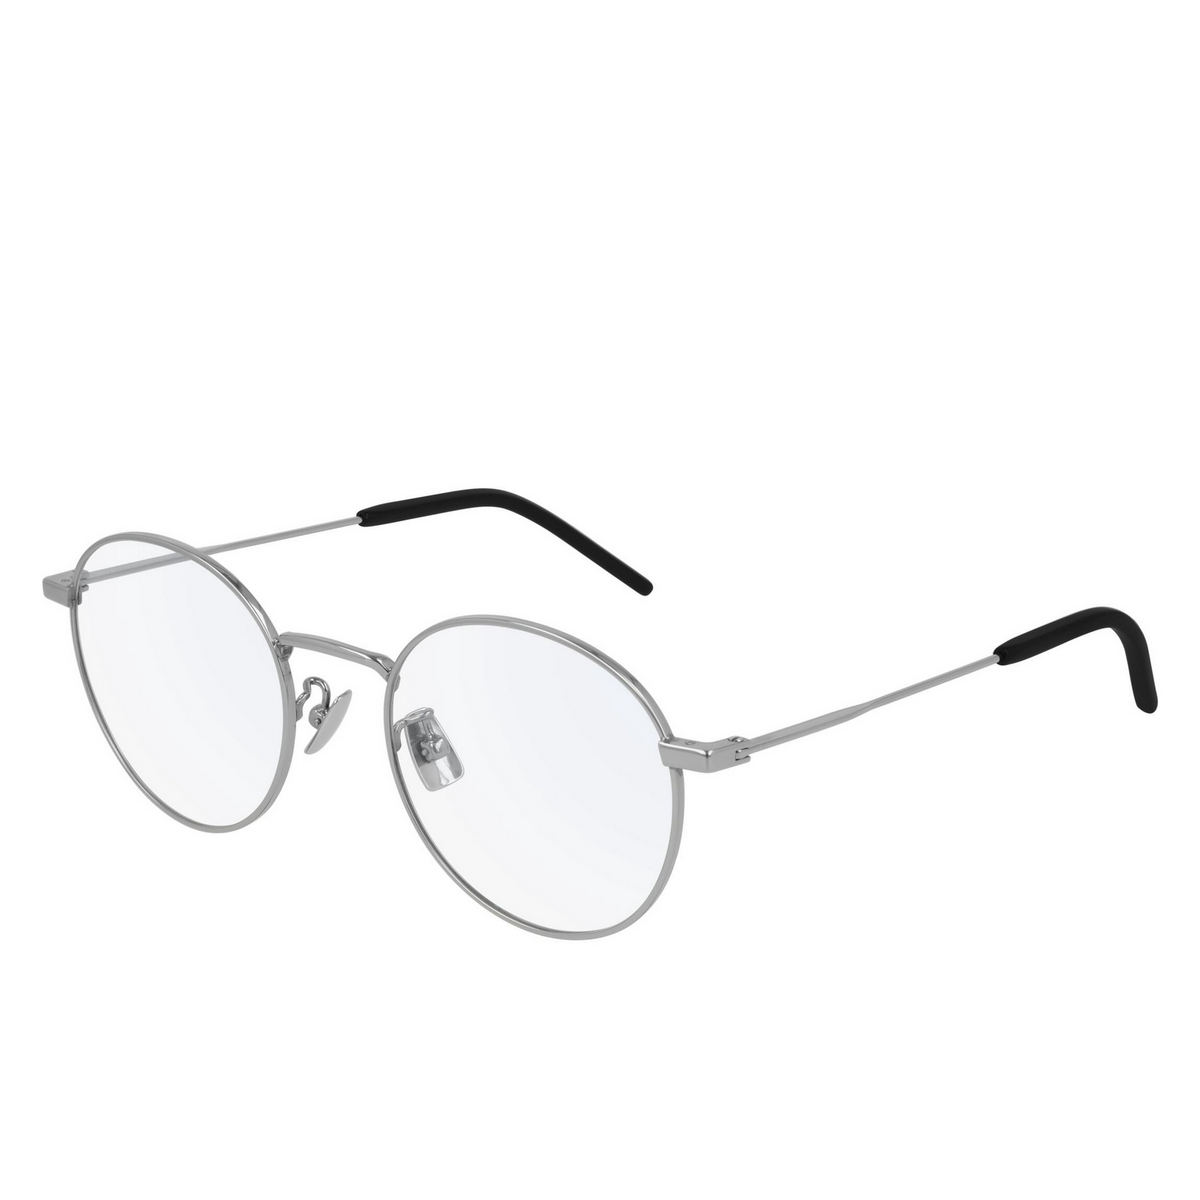 Saint Laurent® Round Eyeglasses: SL 322 T color Silver 002 - 2/2.